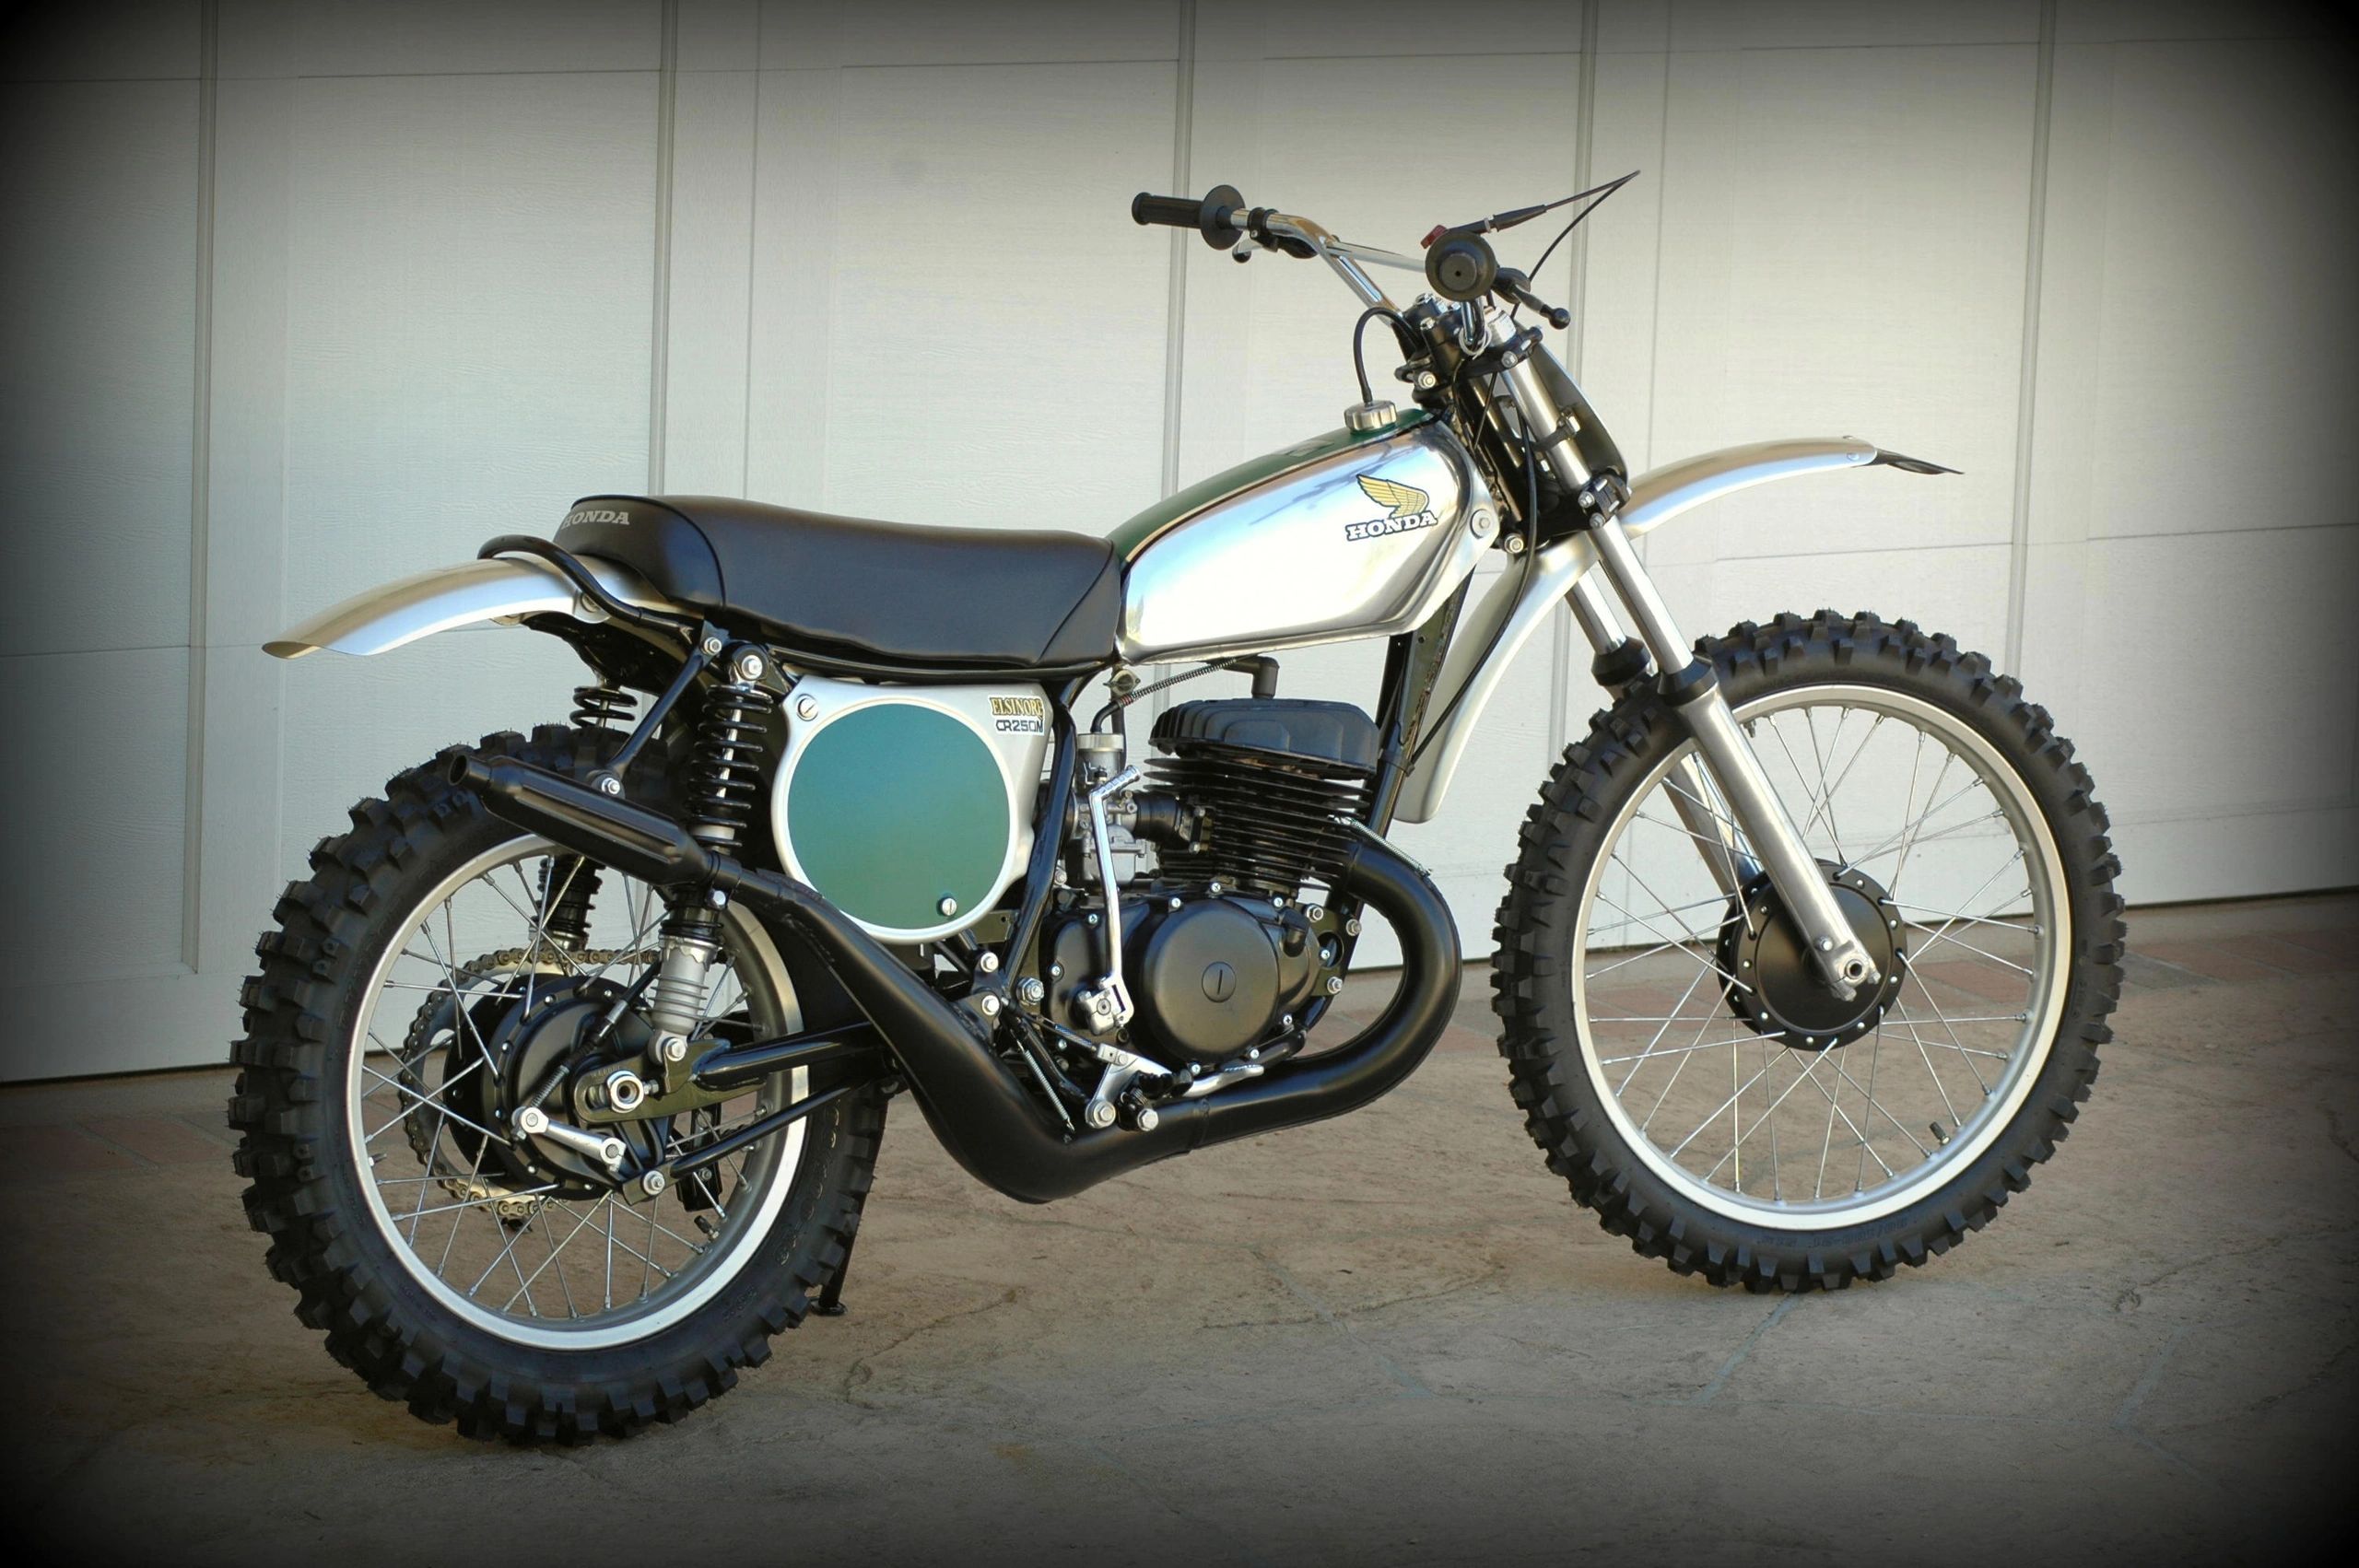 1973 Honda CR250M Elsinore restored motocross race bike